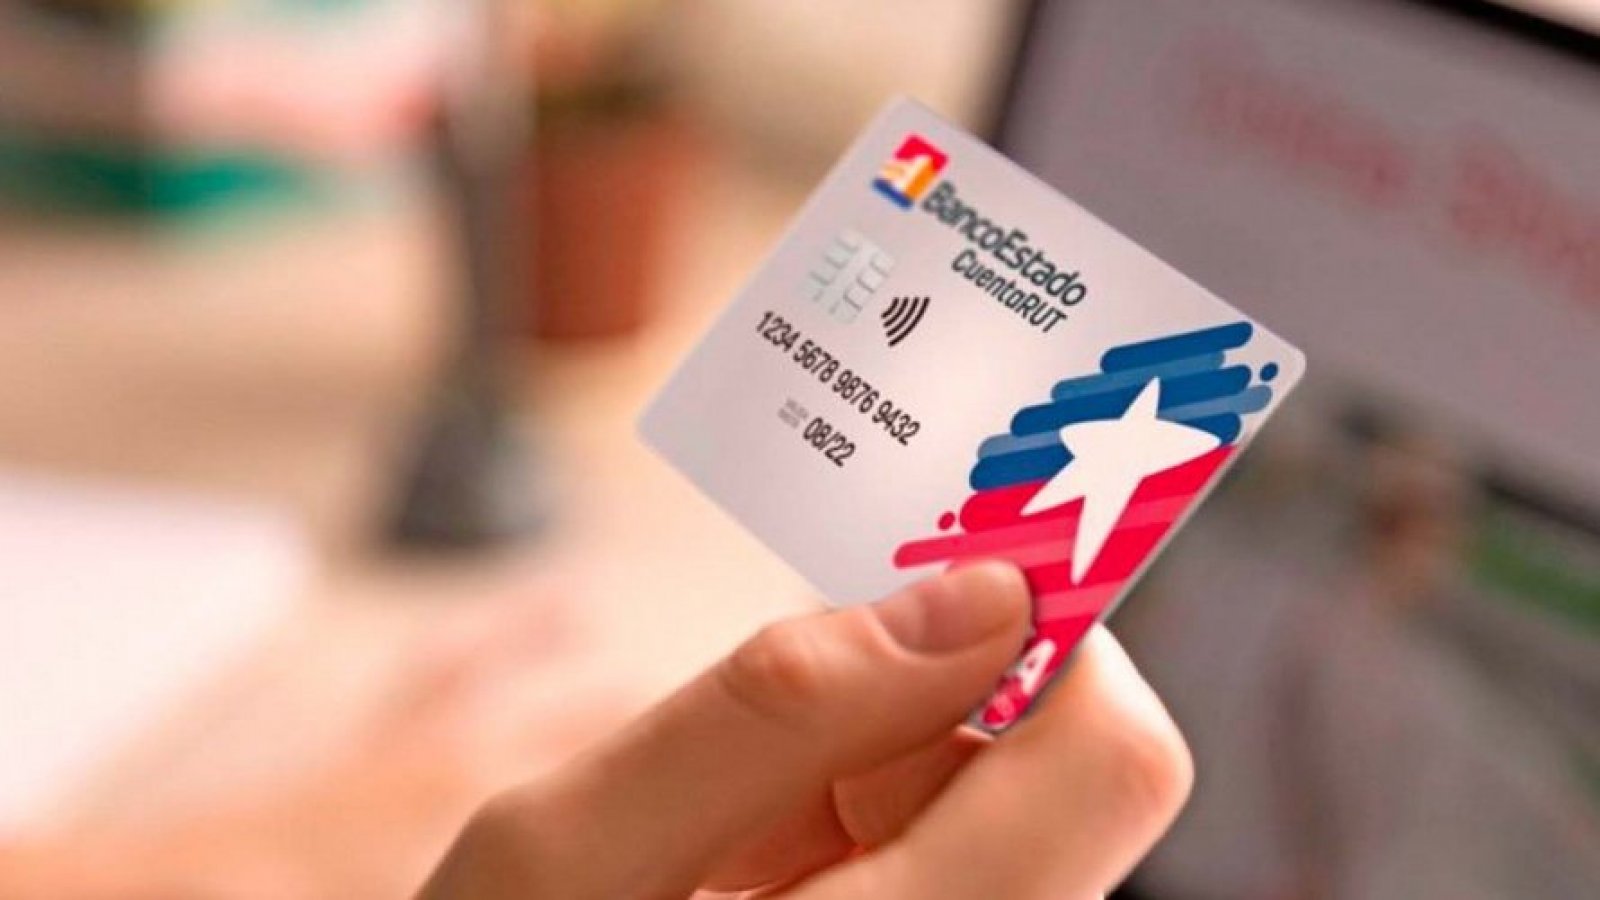 Persona sostiene en su mano la tarjeta de débito "CuentaRut" de BancoEstado de Chile